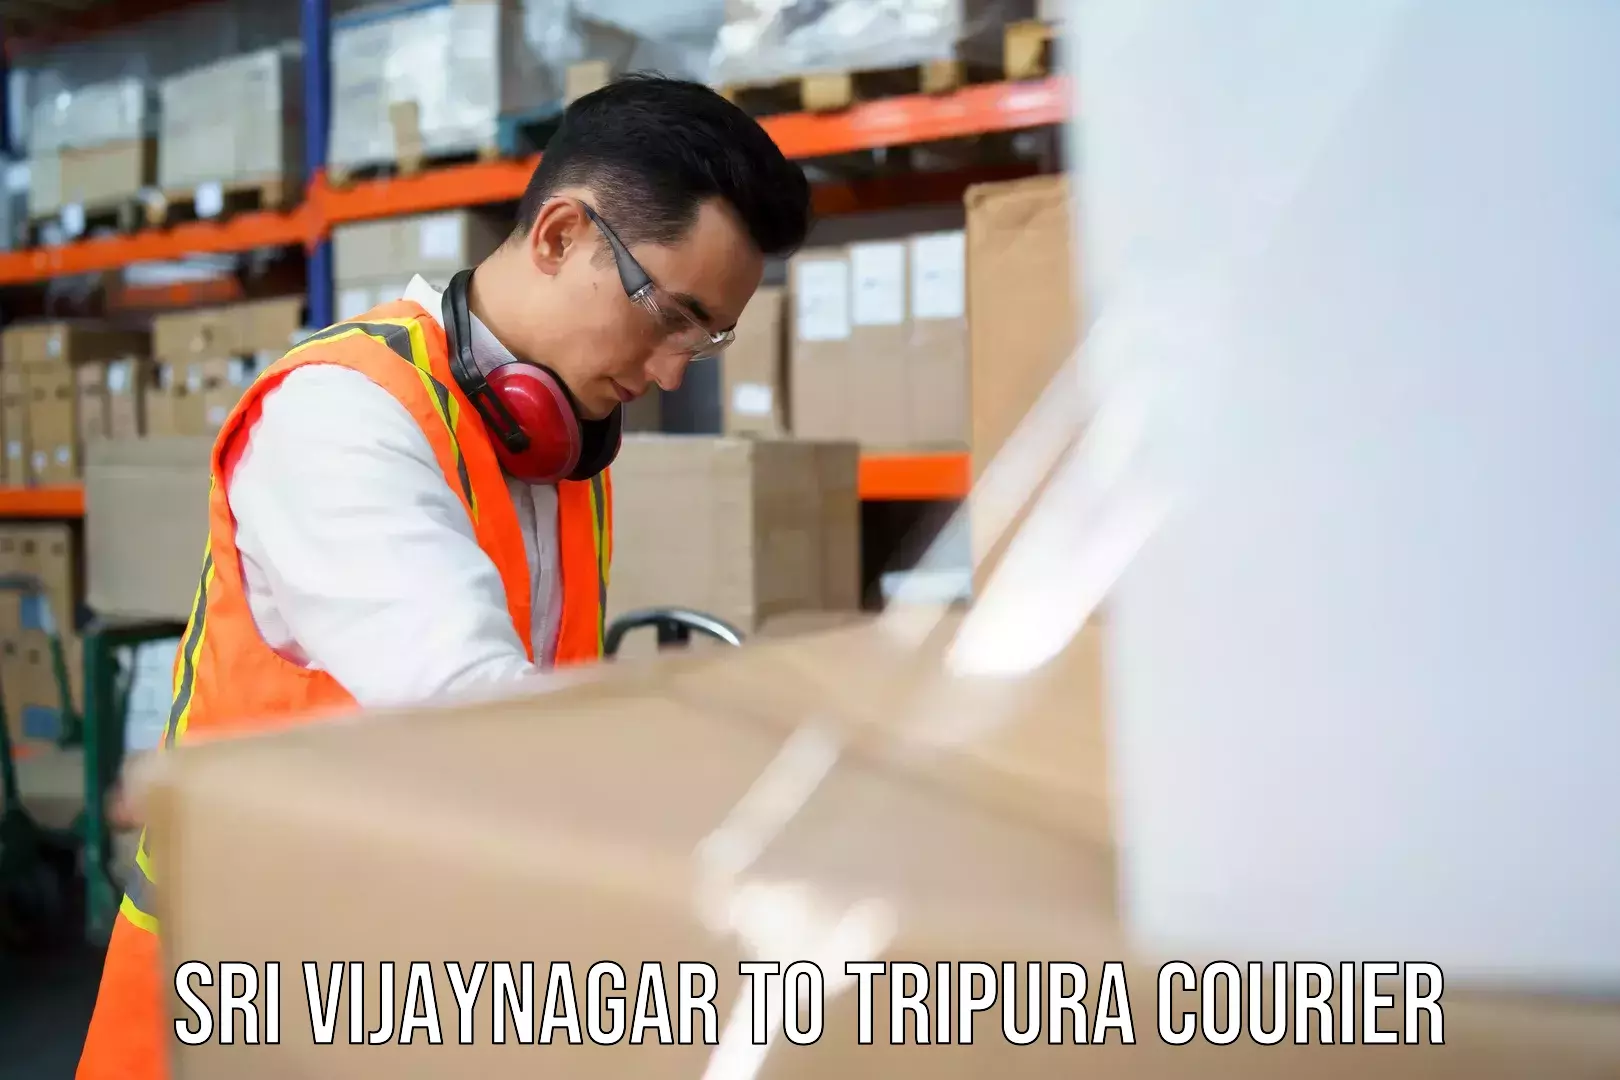 Express logistics service Sri Vijaynagar to West Tripura